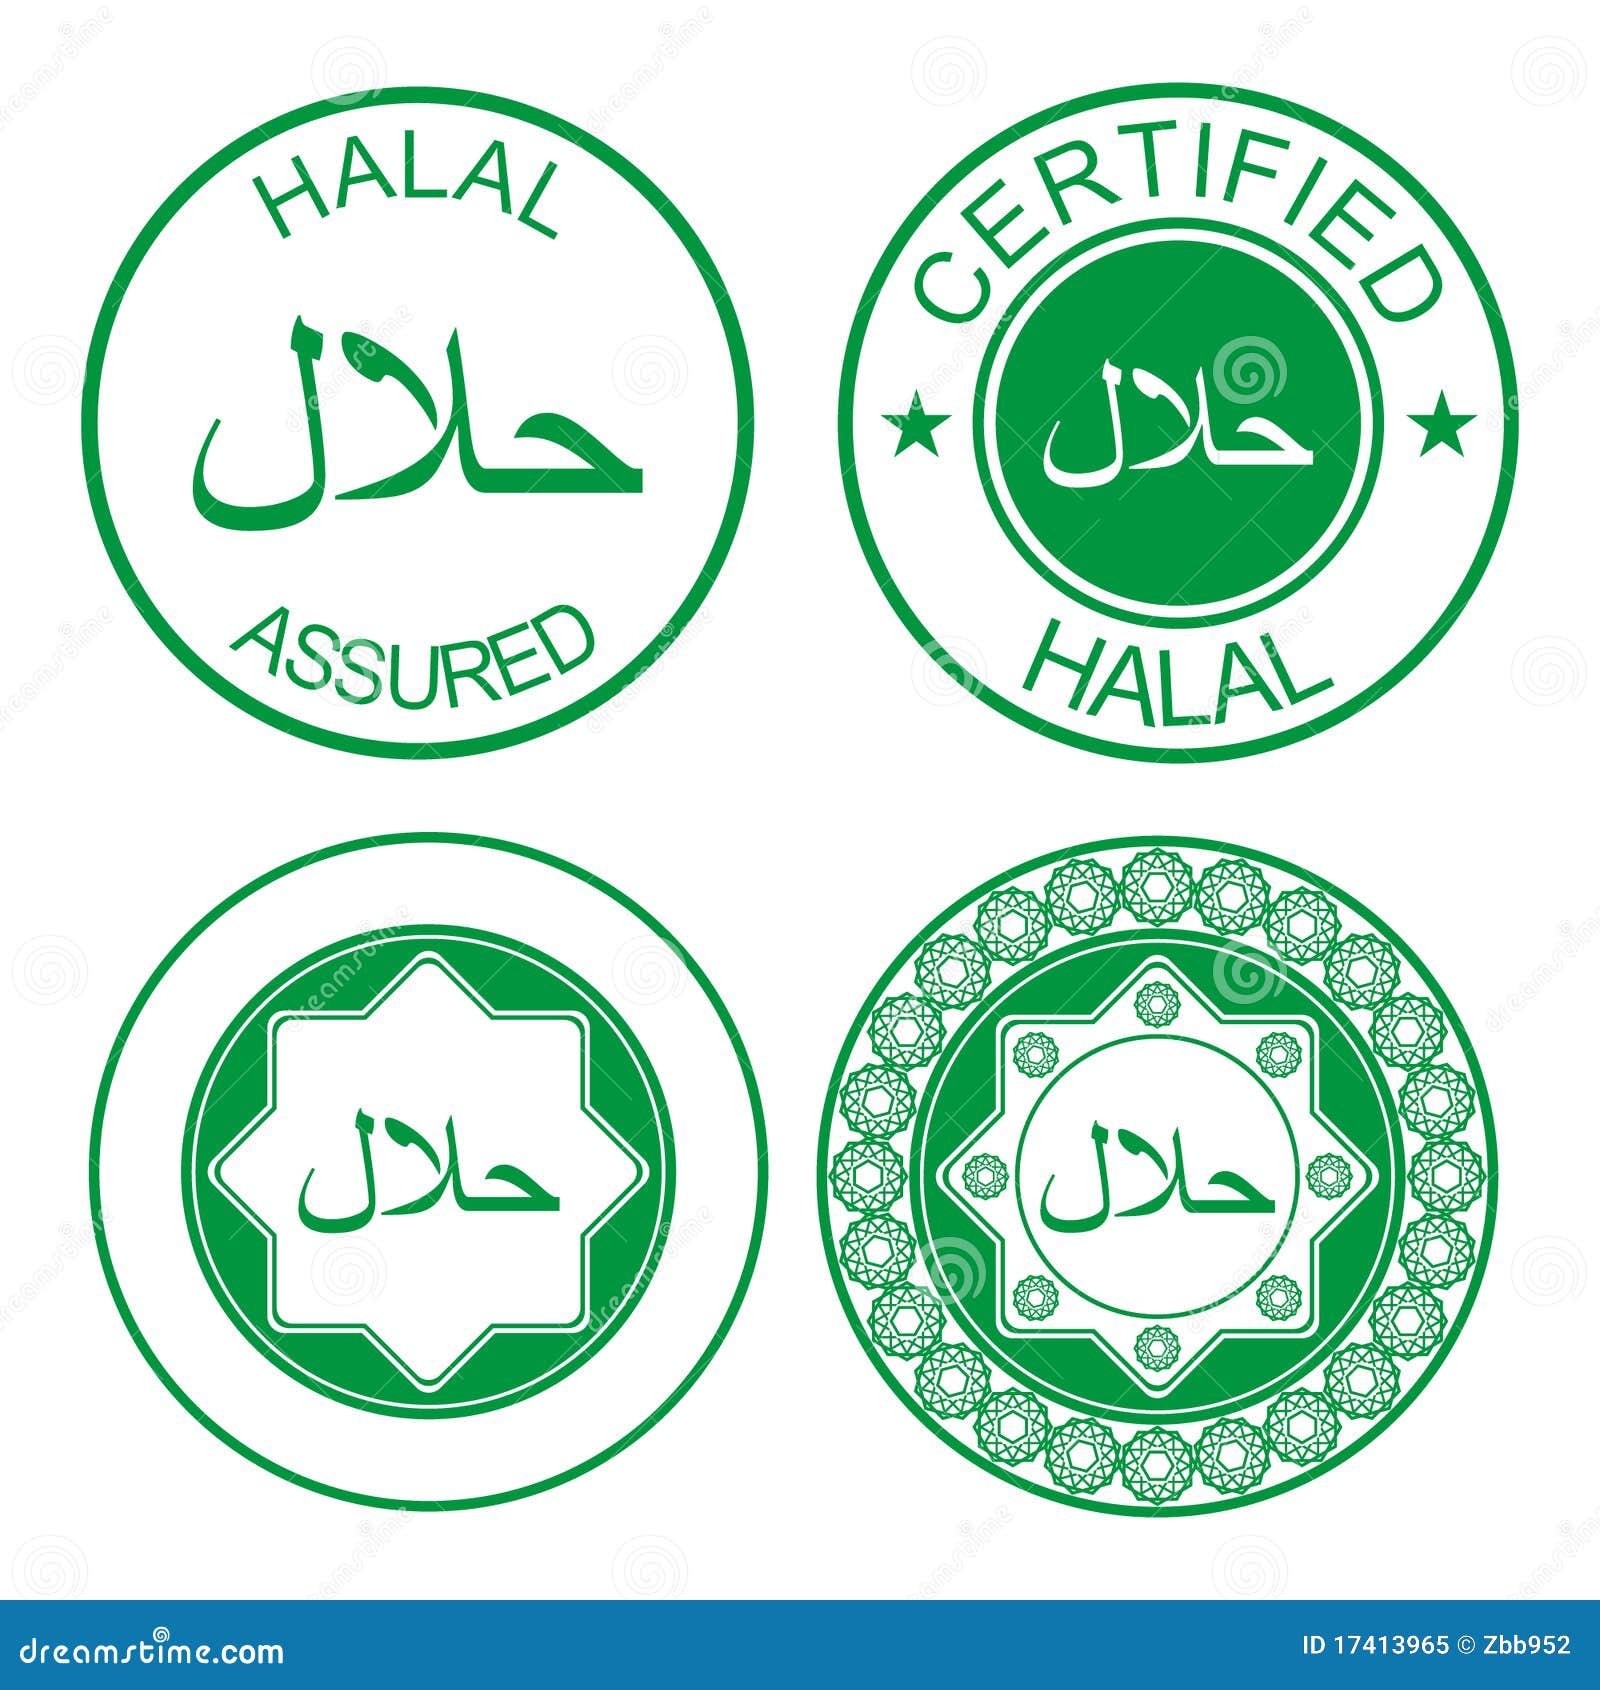 halal rubber stamp